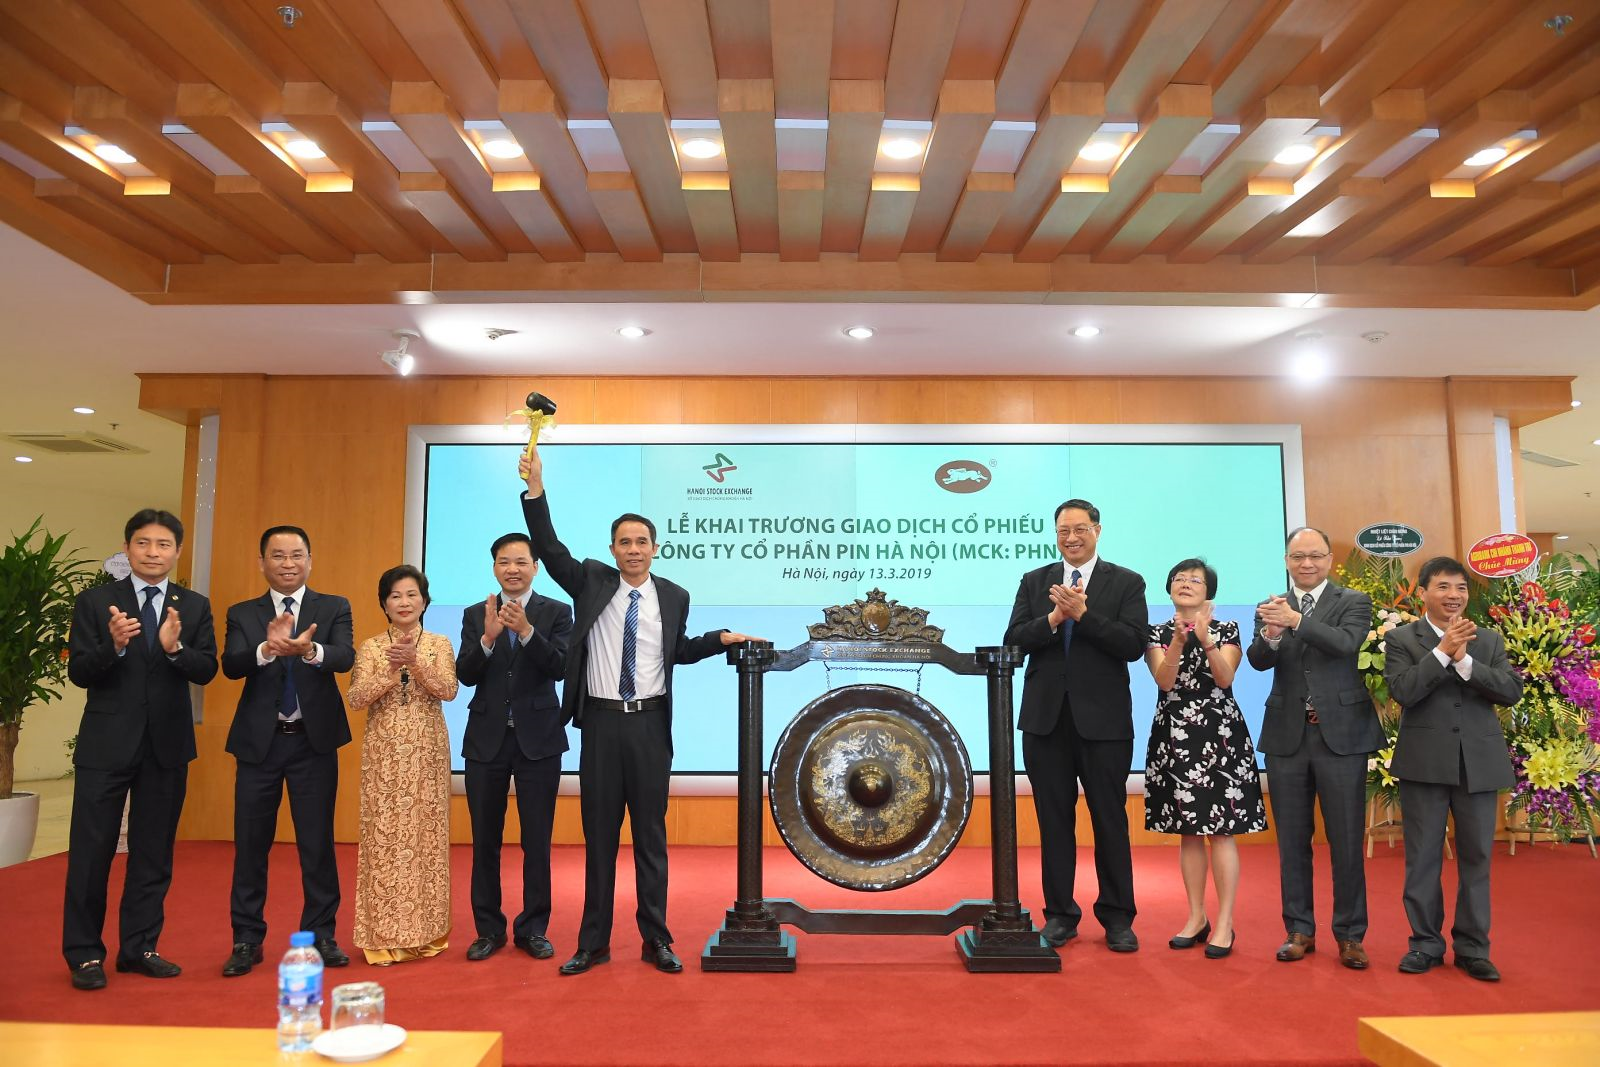 2019 Sàn Giao Dịch Chứng Khoán Hà Nội đã tổ chức lễ khai trương giao dịch cổ phiếu Công ty Cổ Phần Pin Hà Nội